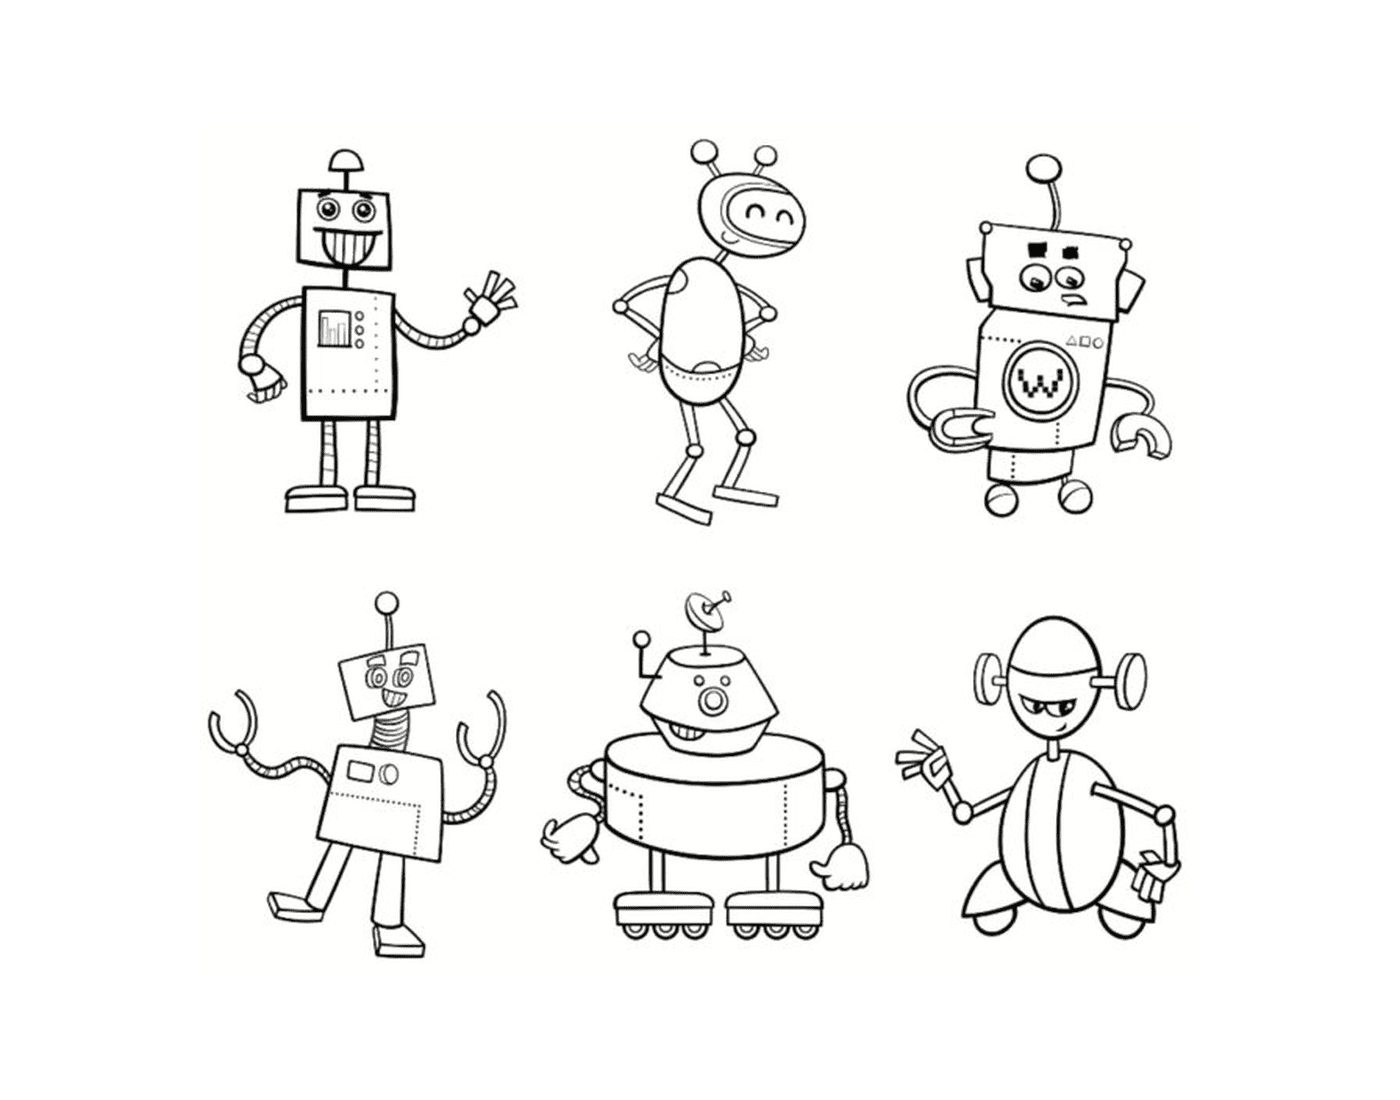  机器人家族 